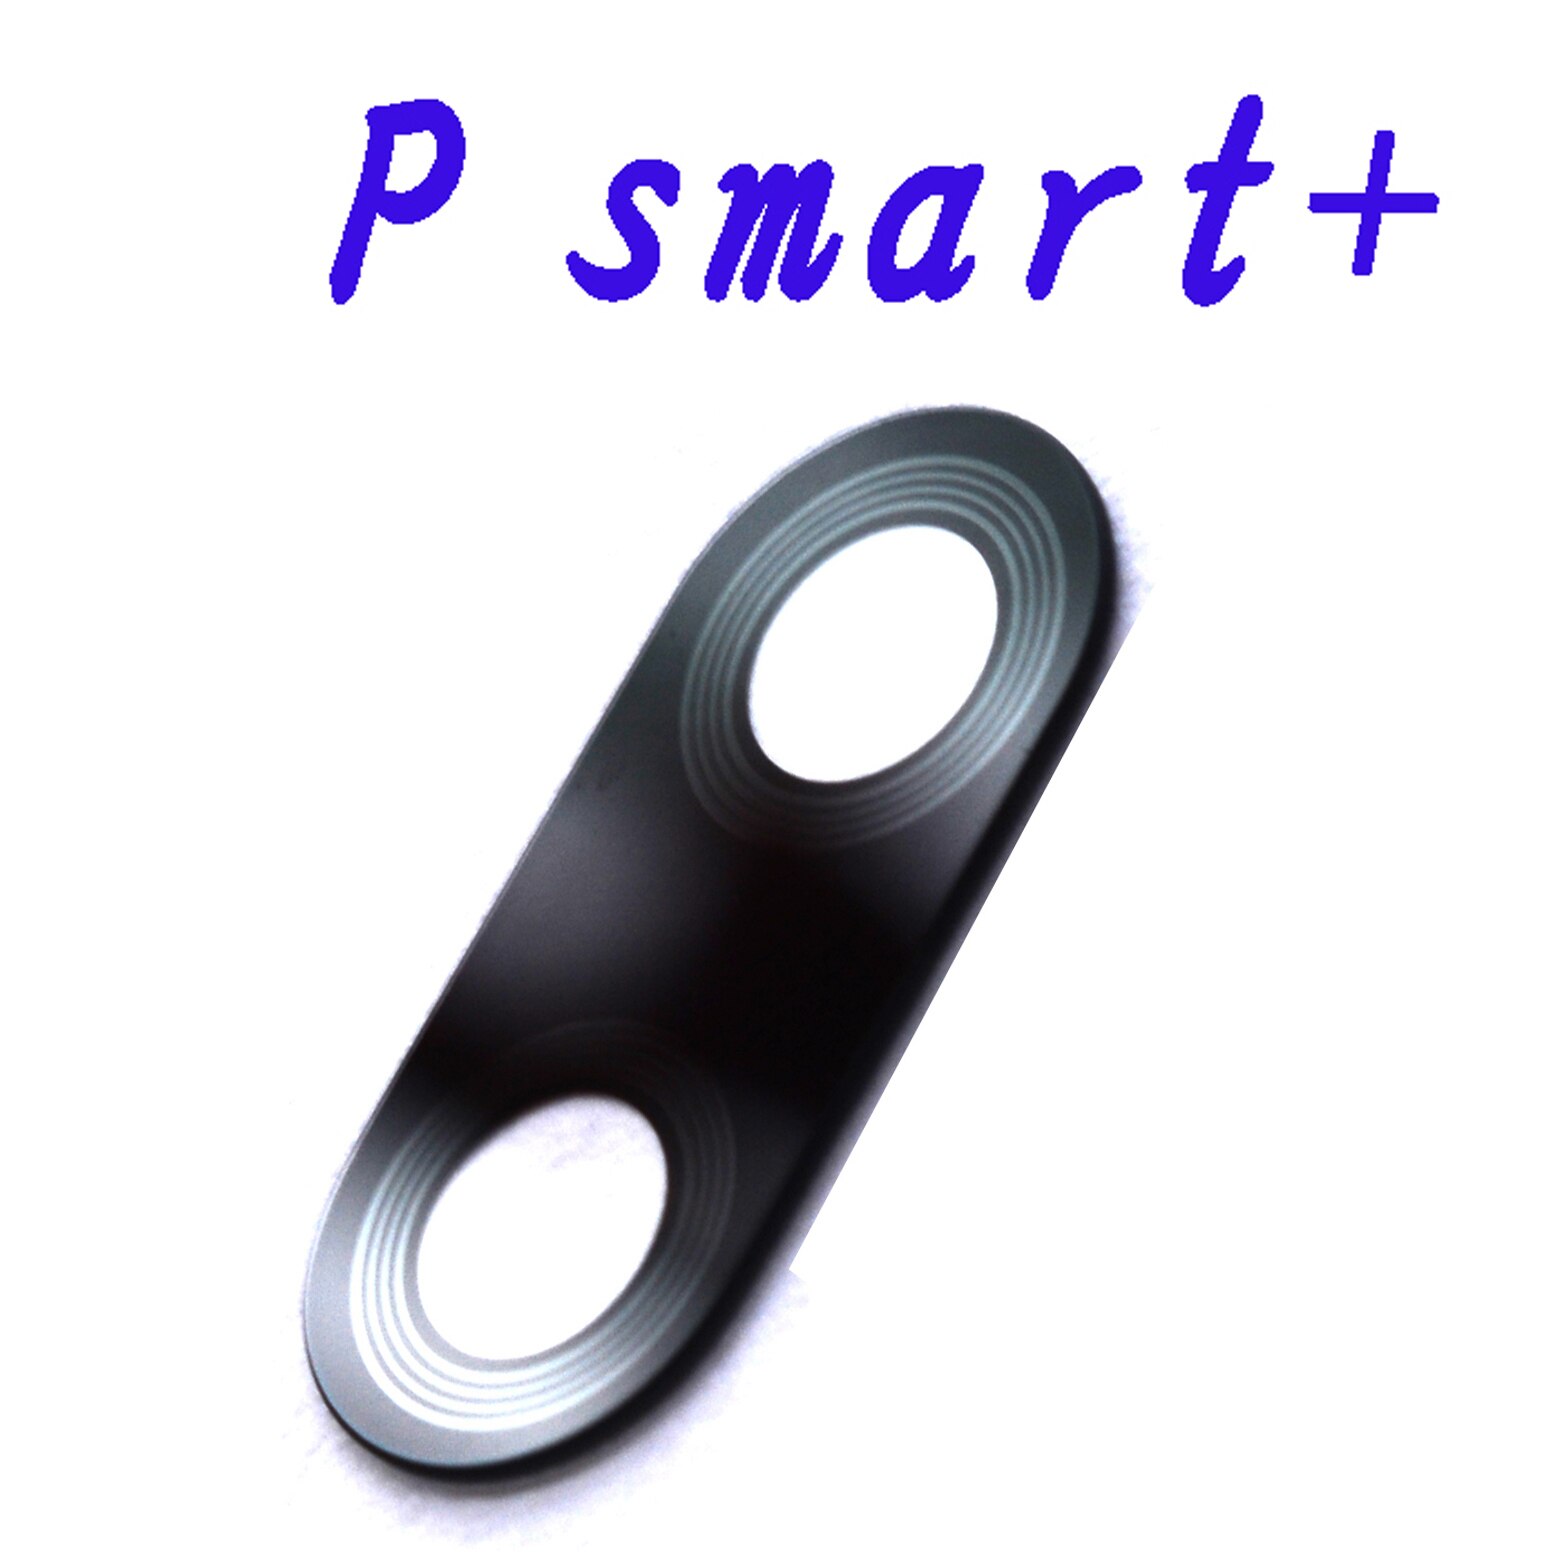 for P smart pro original rear camera glass lens for Huawei P smart + P smart +: P smart Plus